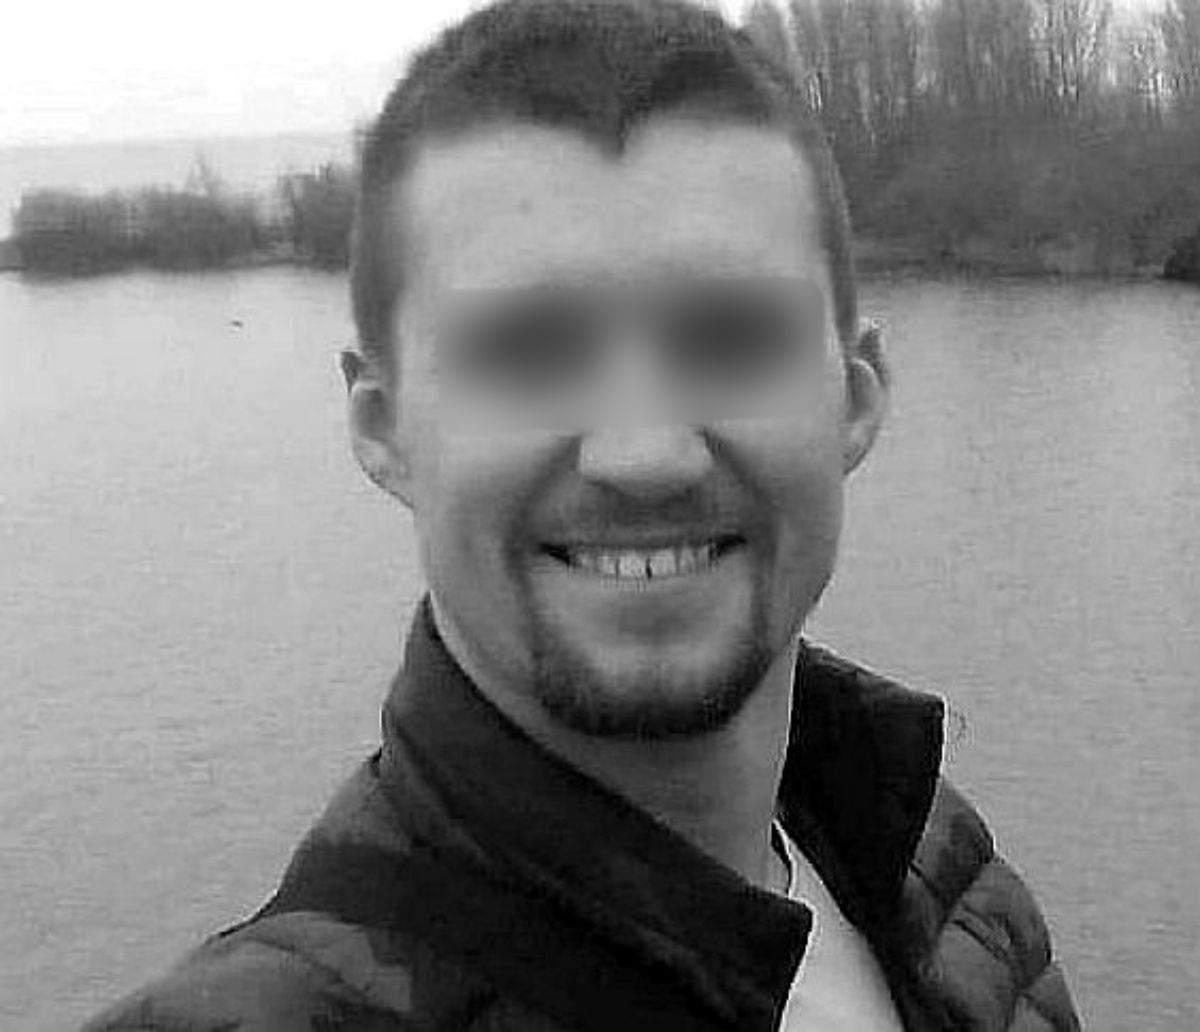 Tragiczny koniec poszukiwań zaginionego Polaka w Holandii. "Byłeś dobrym synem"